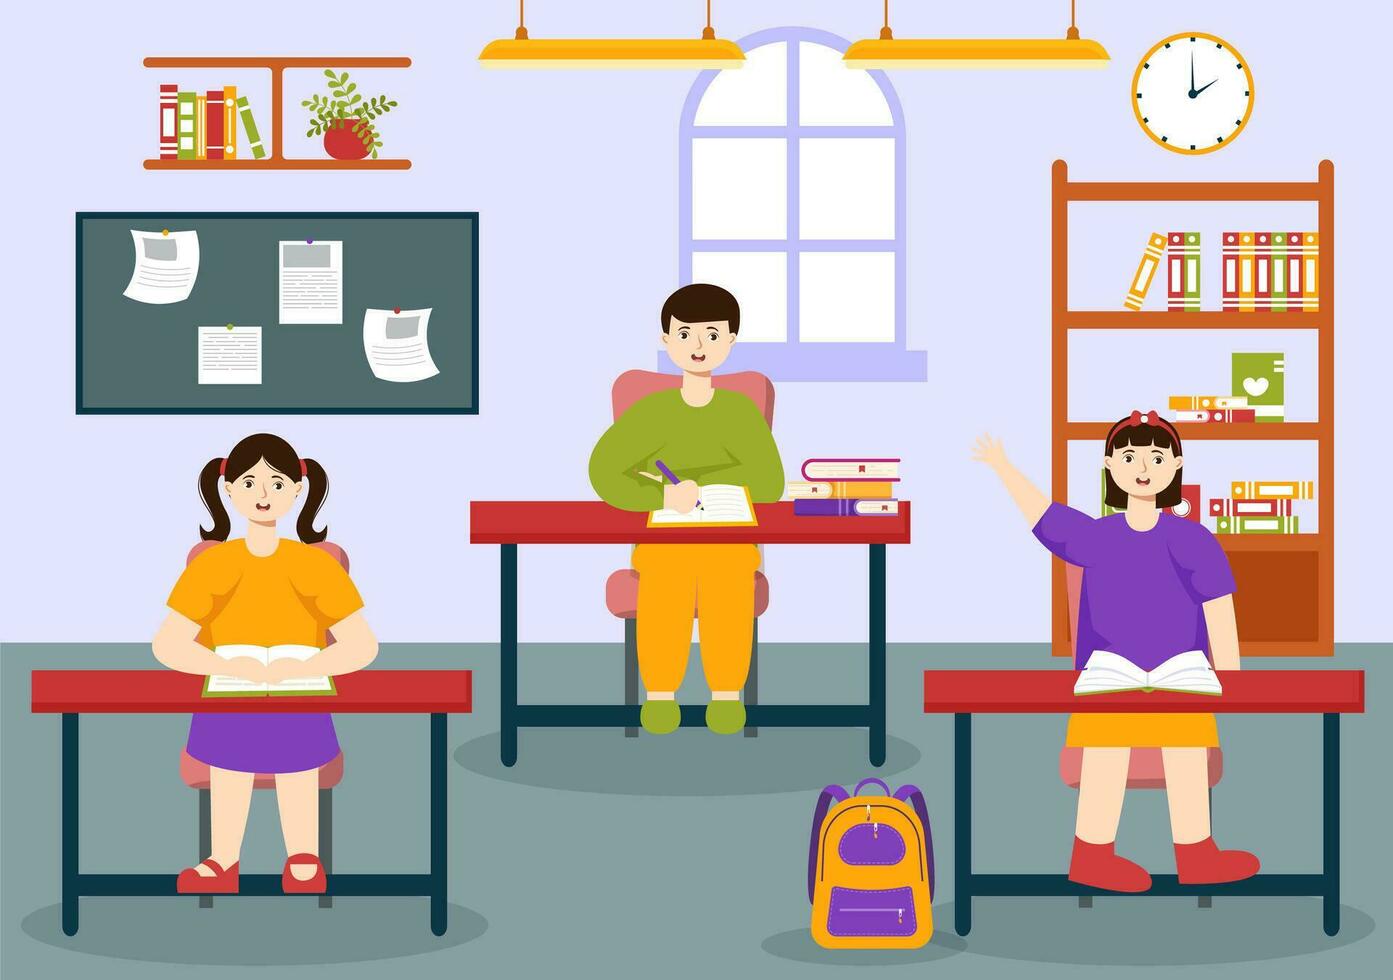 primario colegio vector ilustración de estudiantes niños y colegio edificio con el concepto de aprendizaje y conocimiento en plano dibujos animados antecedentes